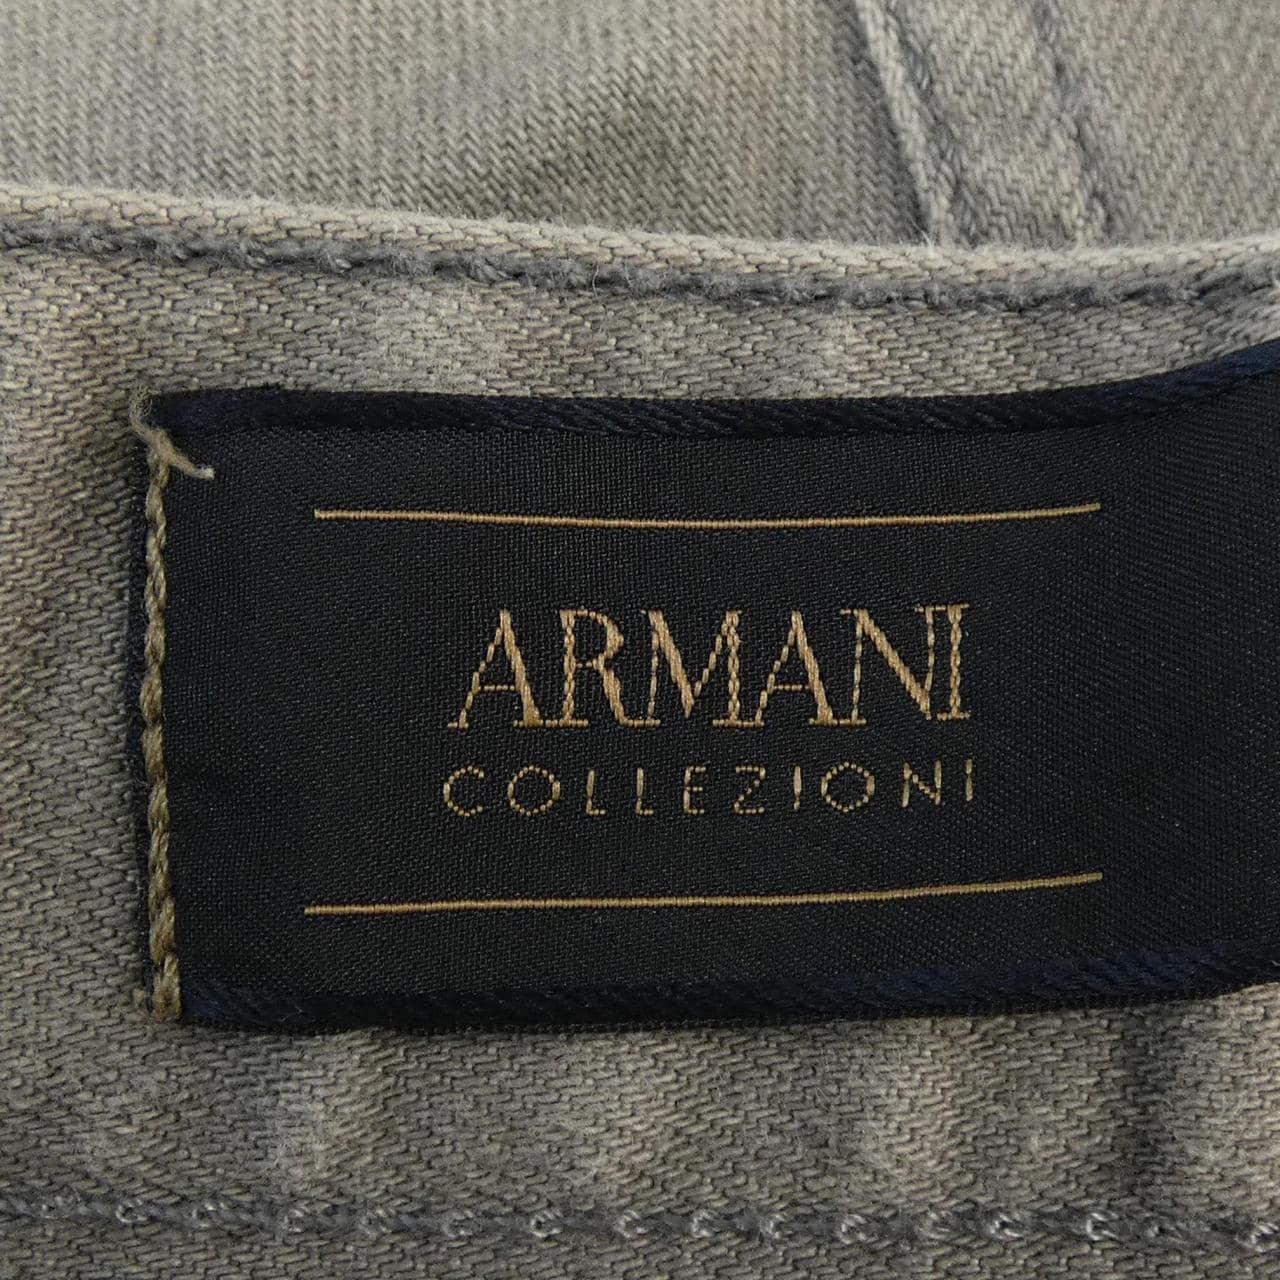 ARMANI collezioni ARMANI 系列